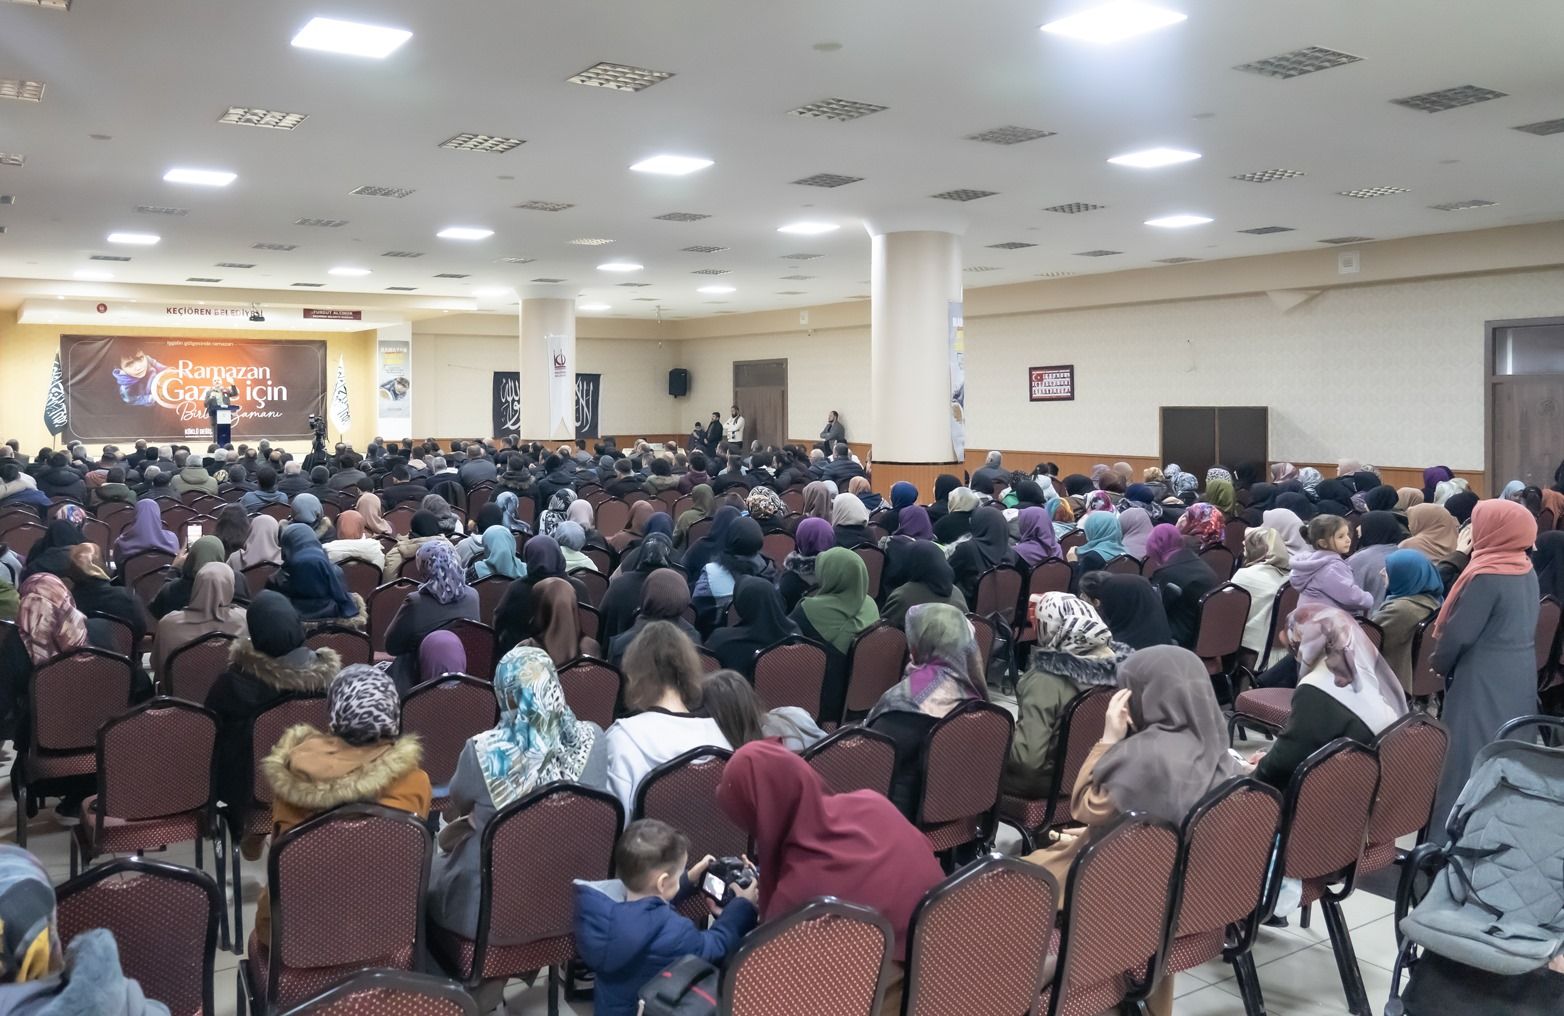 Köklü Değişim, Ankara’da “Ramazan Gazze İçin Birlik Zamanı” Başlıklı Bir Konferans Düzenledi-GENEL-2.jpeg